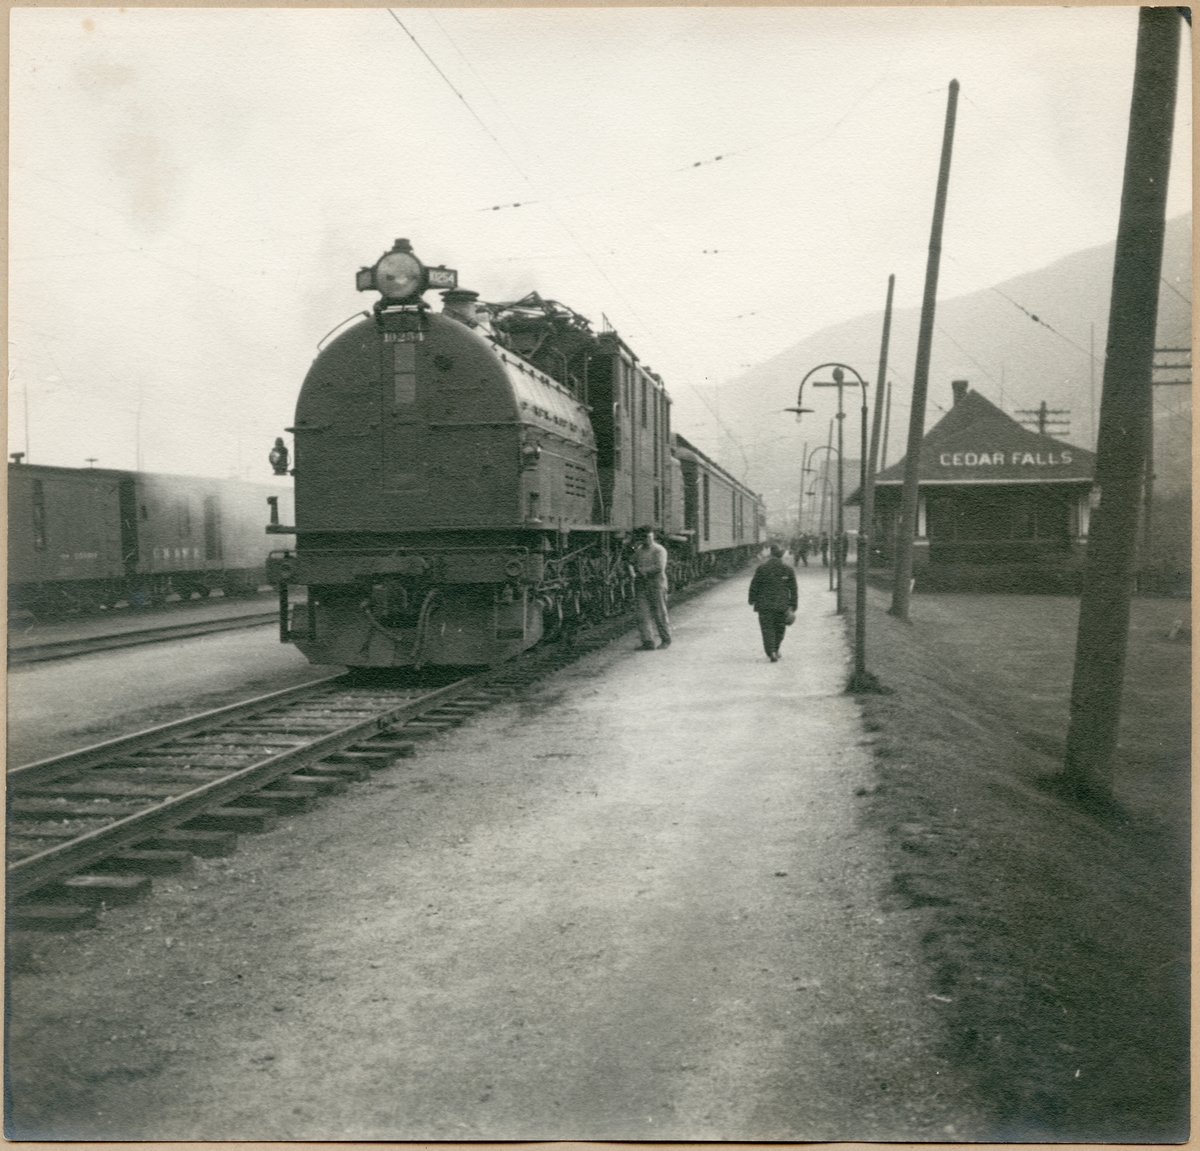 Lok med godsvagnar vid Cedar Falls station.
Bild från Bantekniska kontorets studieresa i USA.